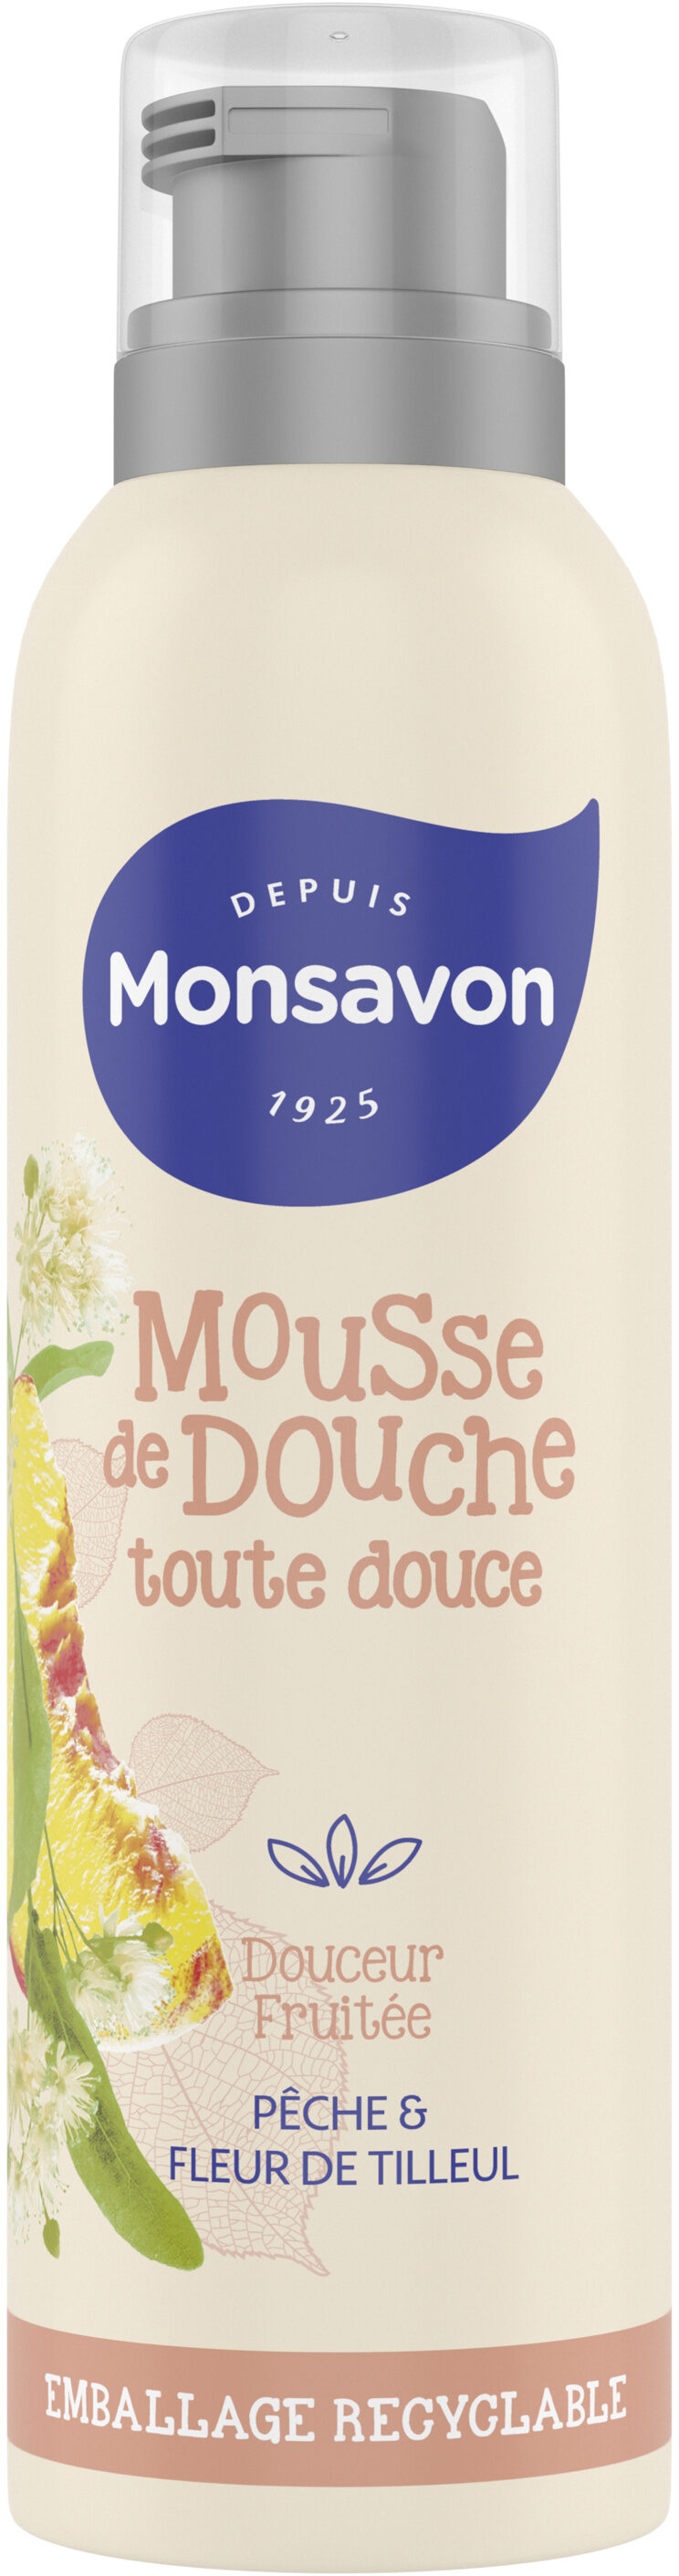 Monsavon Gel Douche Mousse Douceur Fruitée Pêche & Tilleul - Tuote - fr